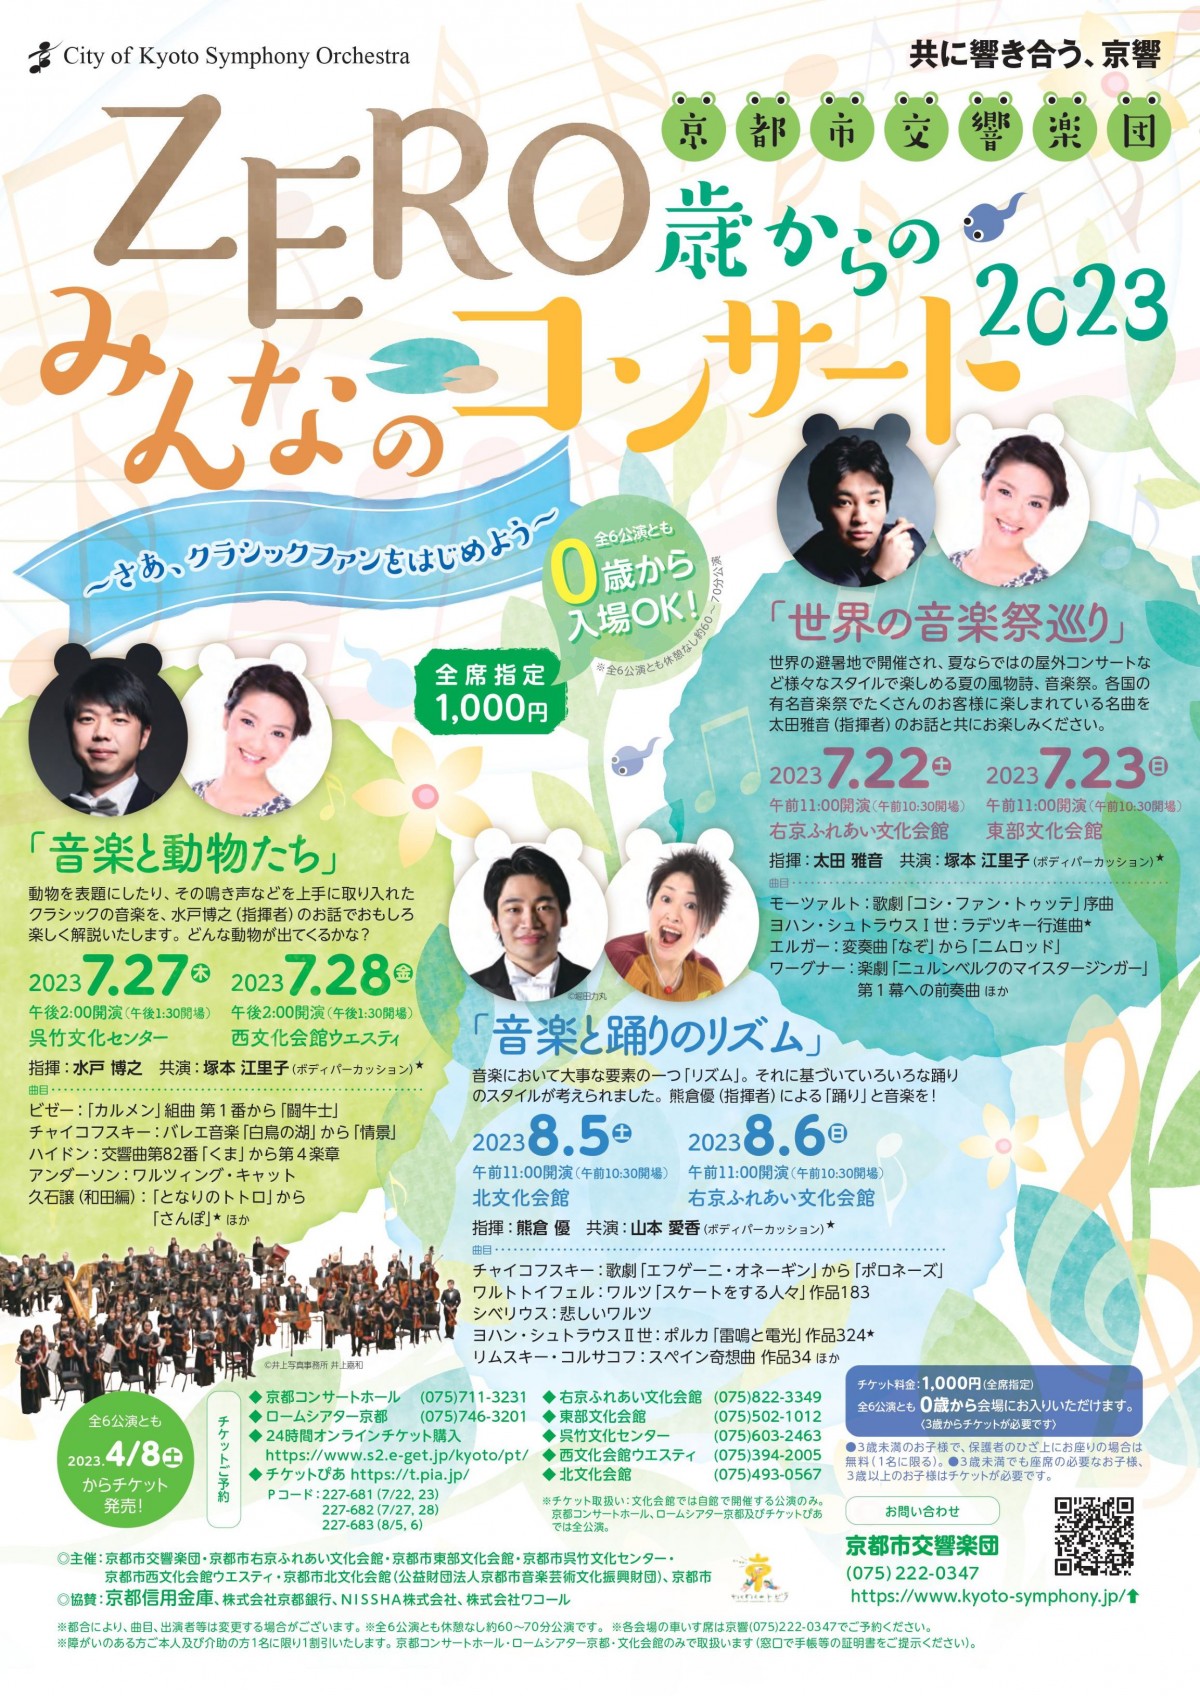 京都市交響楽団ZERO歳からのみんなのコンサート2023 「音楽と動物たち」のフライヤー画像